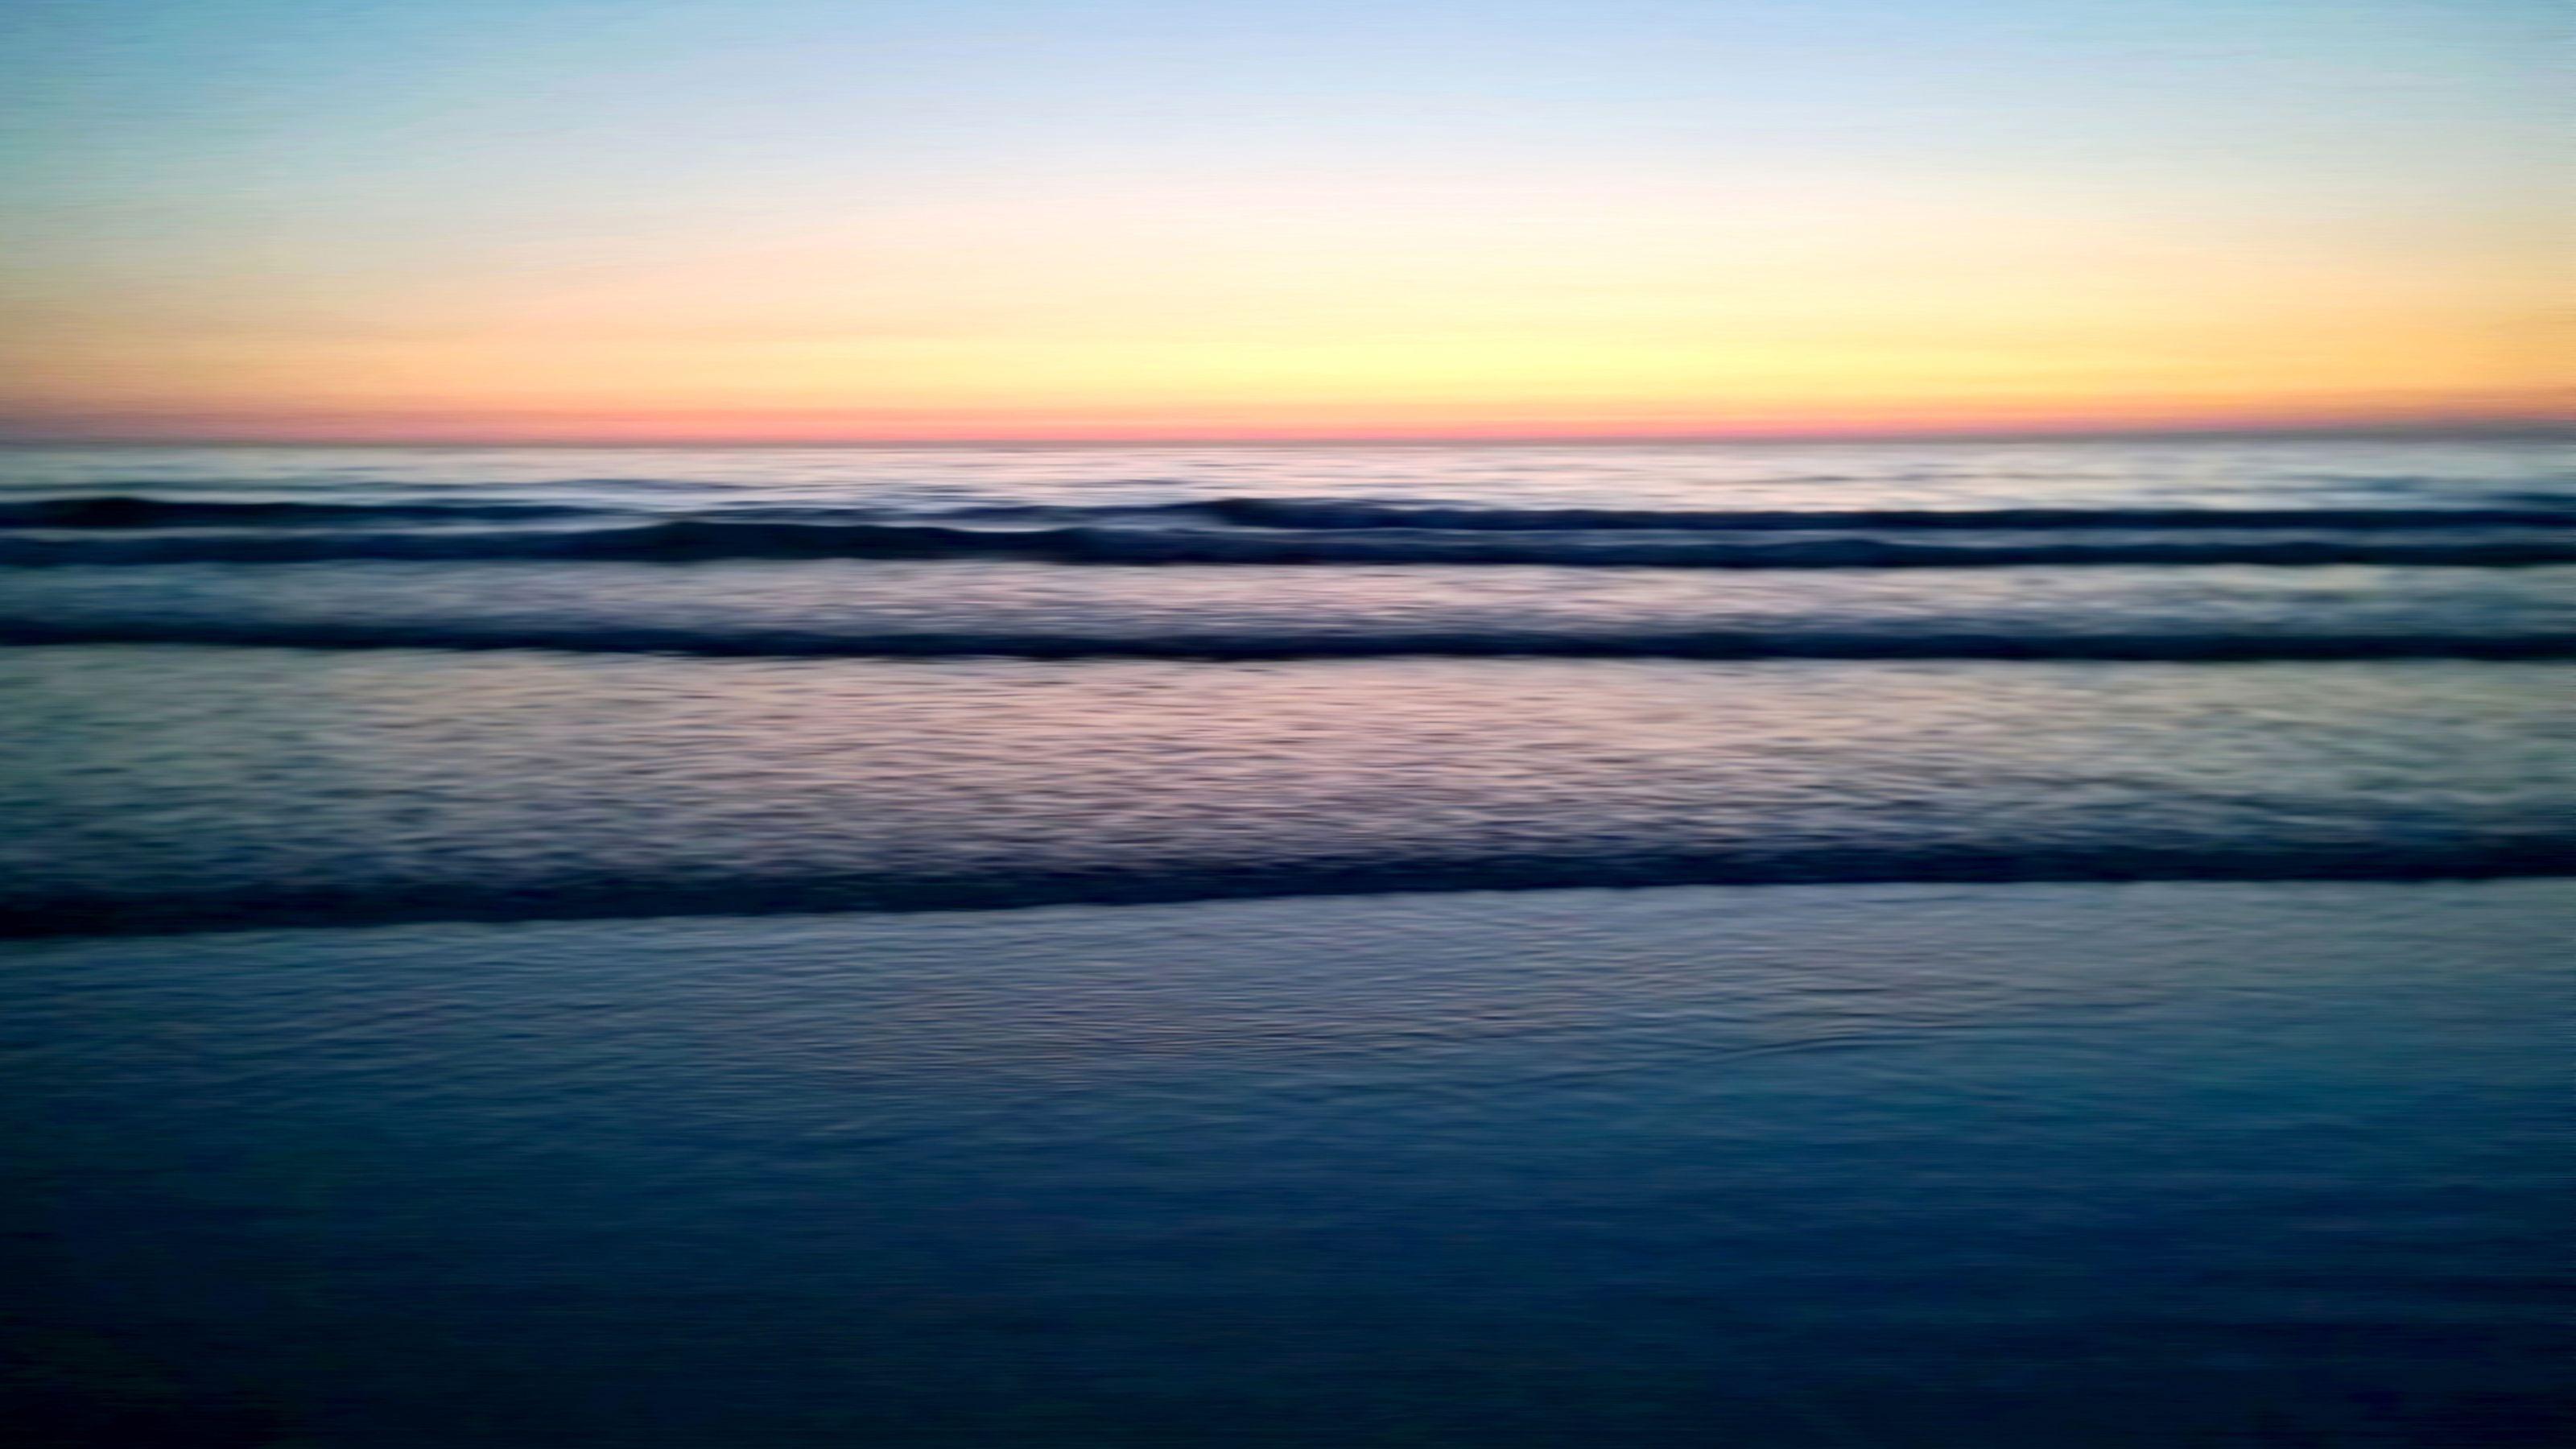 Blue Sunset Beach Wallpapers - Top Free Blue Sunset Beach Backgrounds